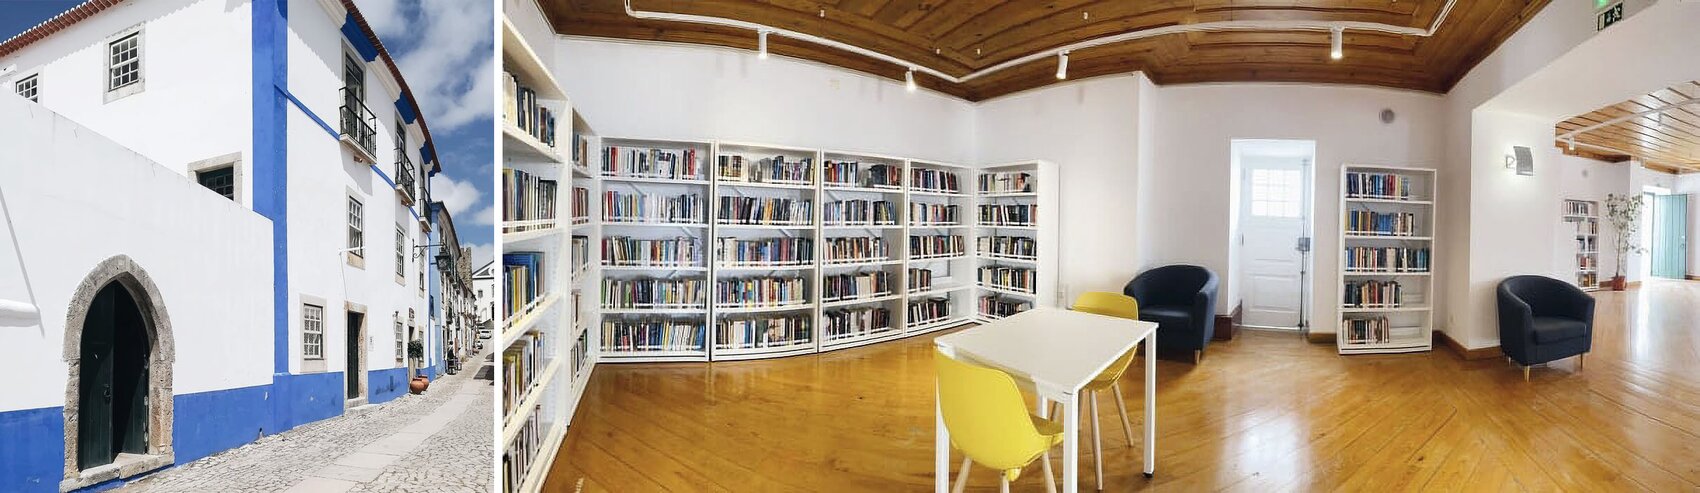 Biblioteca - Casa de Saramago